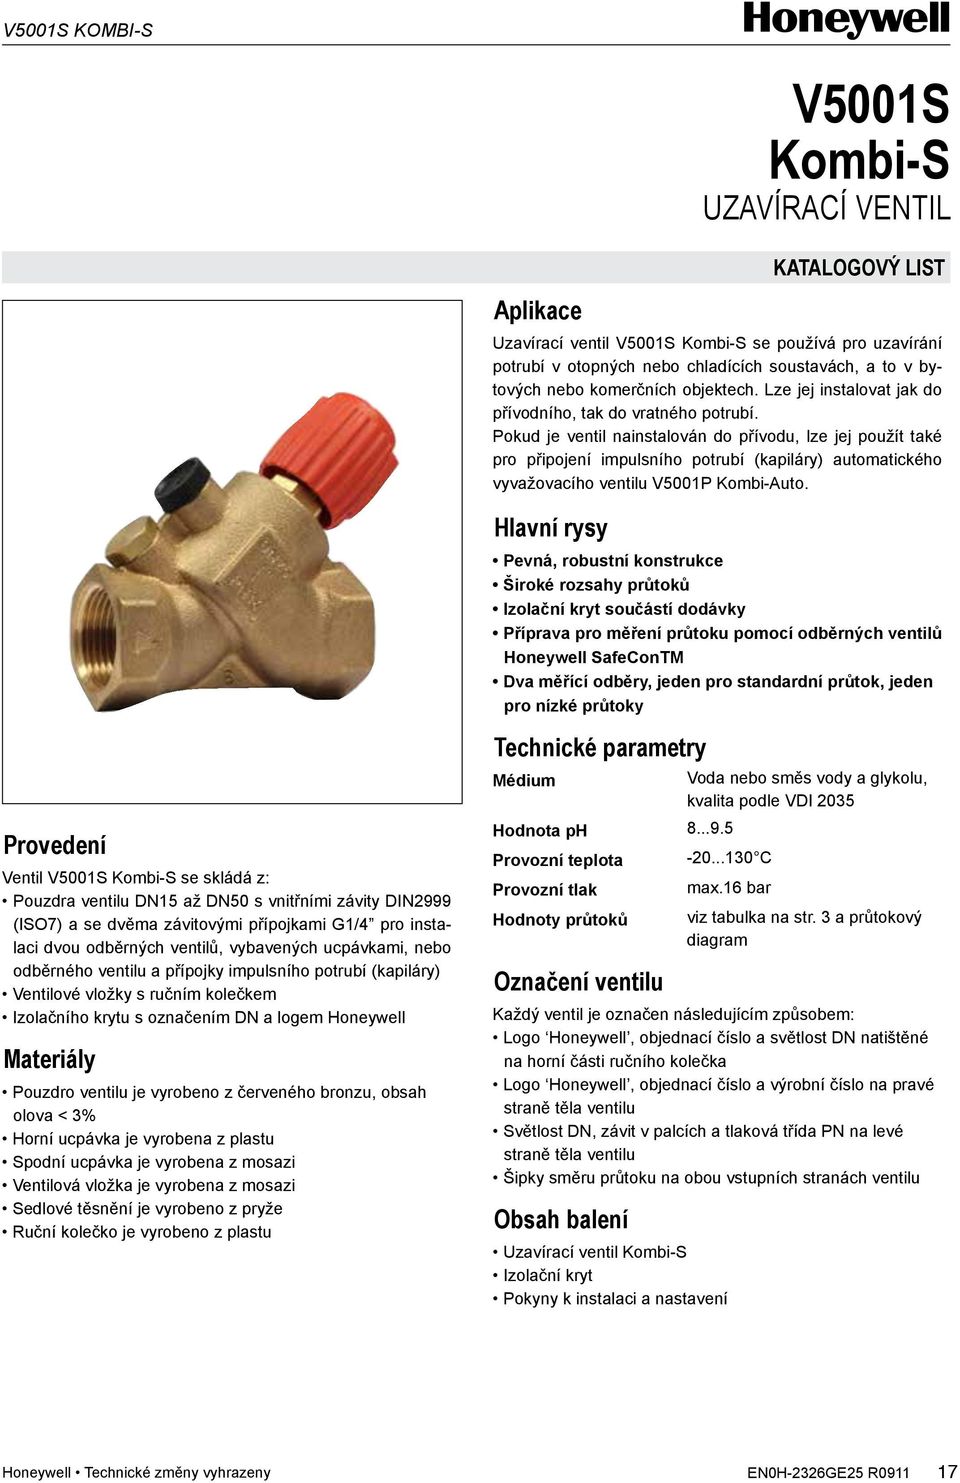 Pokud je ventil nainstalován do přívodu, lze jej použít také pro připojení impulsního potrubí (kapiláry) automatického vyvažovacího ventilu V5001P Kombi-Auto.